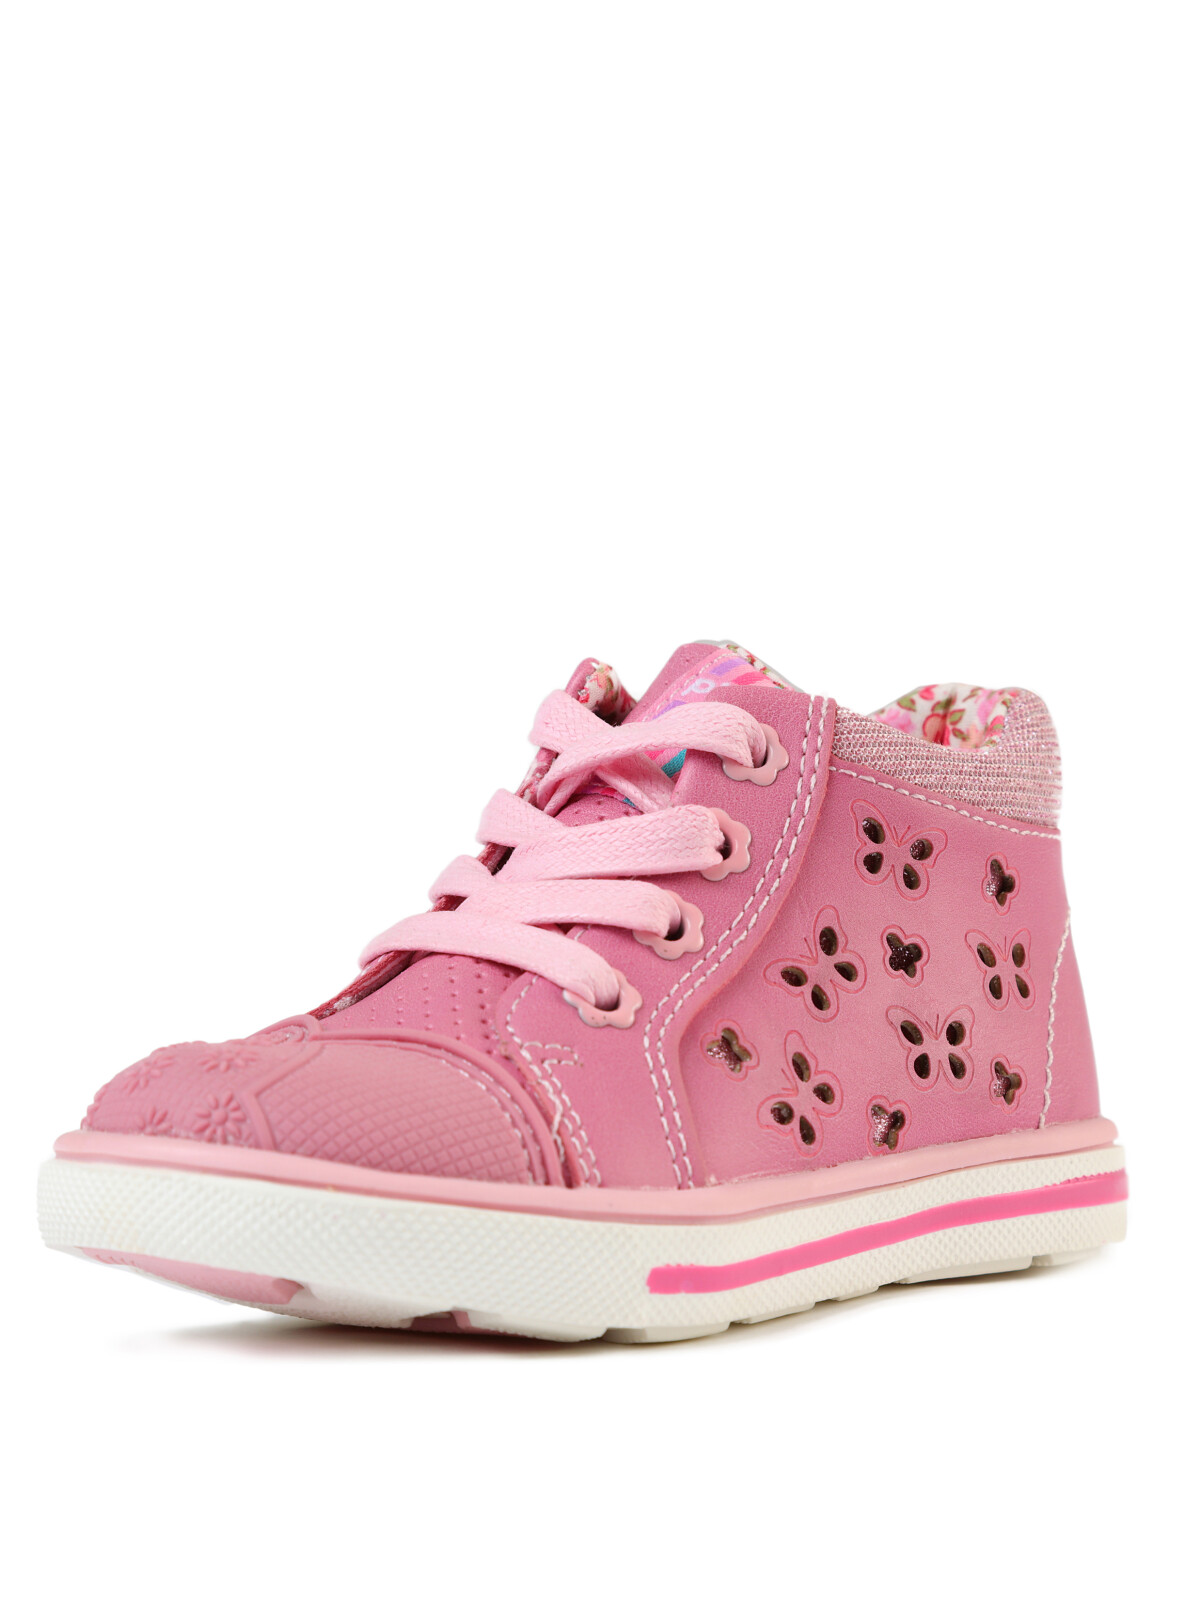 ботинки playtoday для девочки, розовые